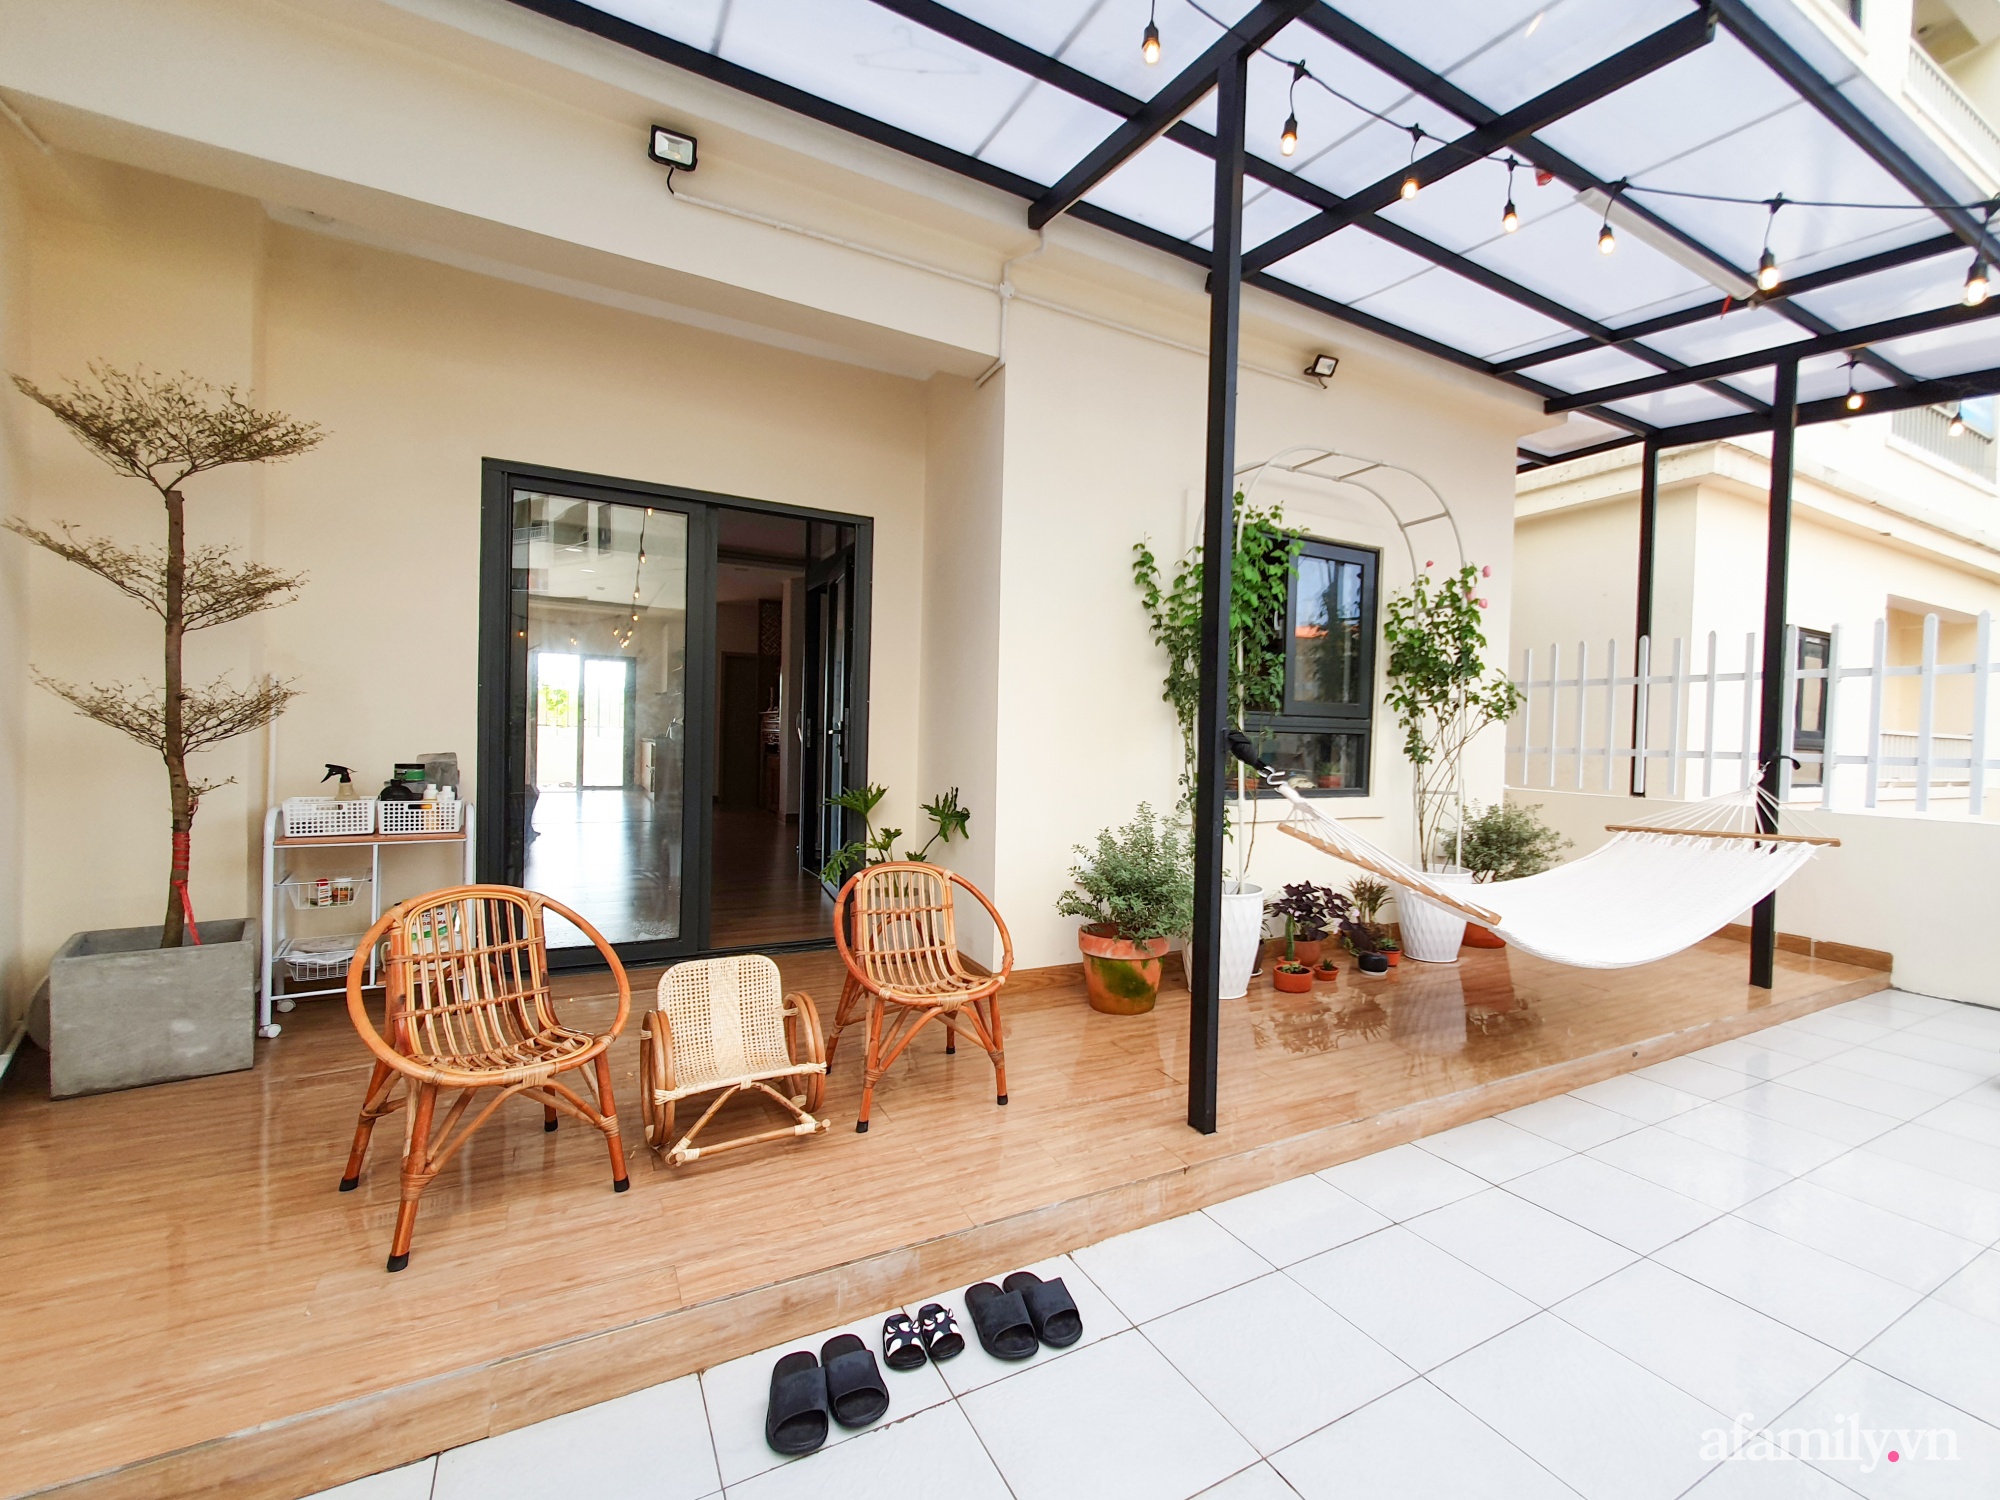 Căn hộ 180m² được vợ chồng trẻ cải tạo vừa ở vừa làm vườn có chi phí 550 triệu đồng ở Sài Gòn - Ảnh 14.